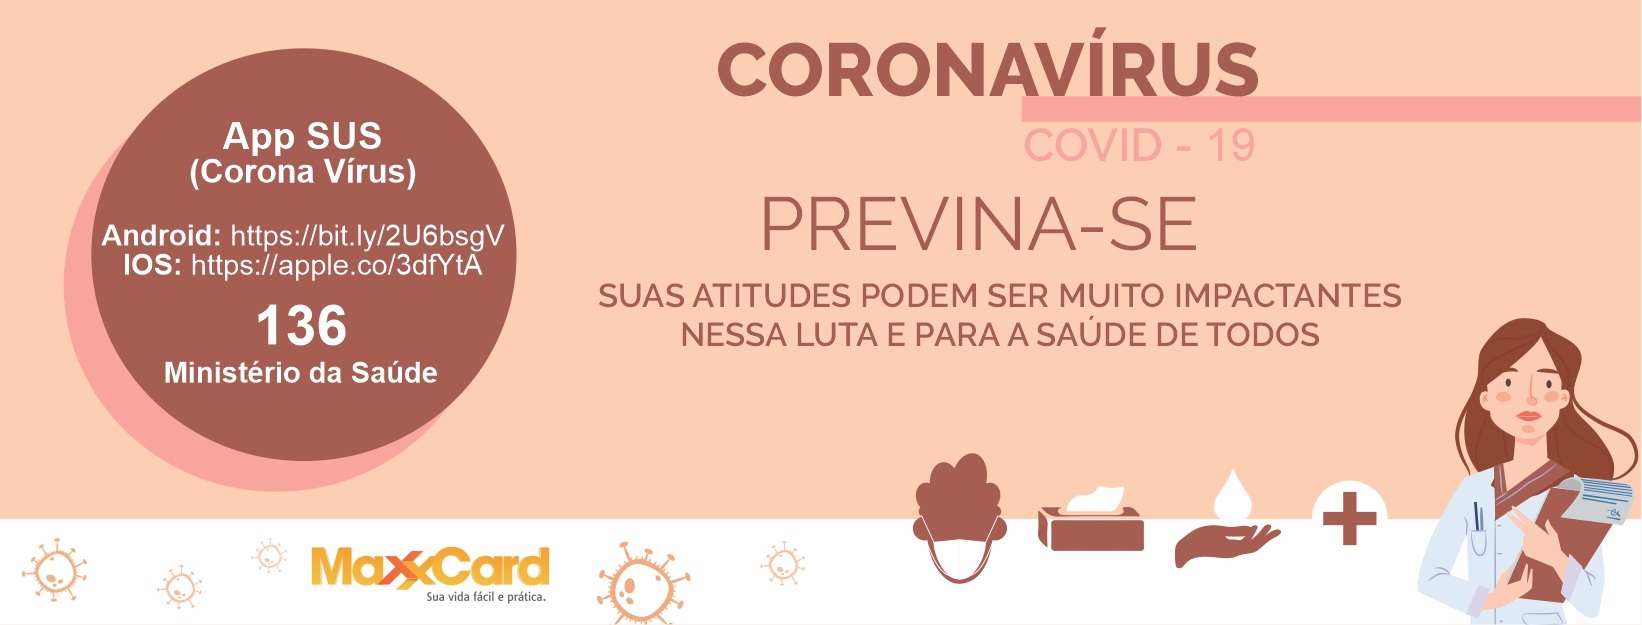 Coronavírus: Qual o papel do RH em casos de pandemia?